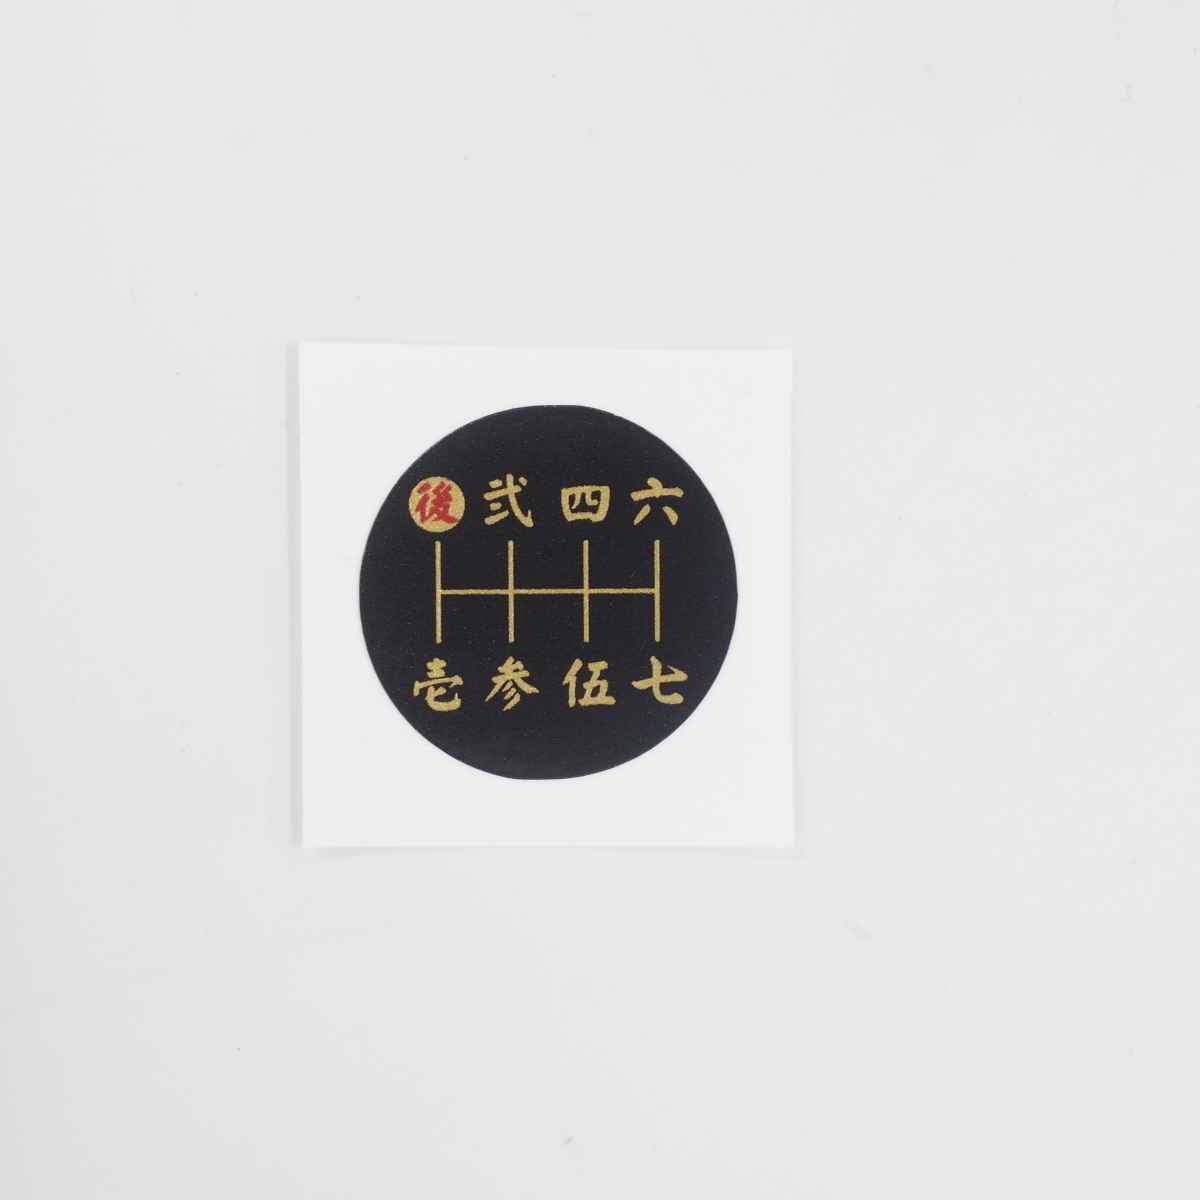 7速 シフトパターン まる型 漢字 和柄 黒 ステッカー シール イスズ スーパーグレート ギガ プロフィア UD デコトラの画像1